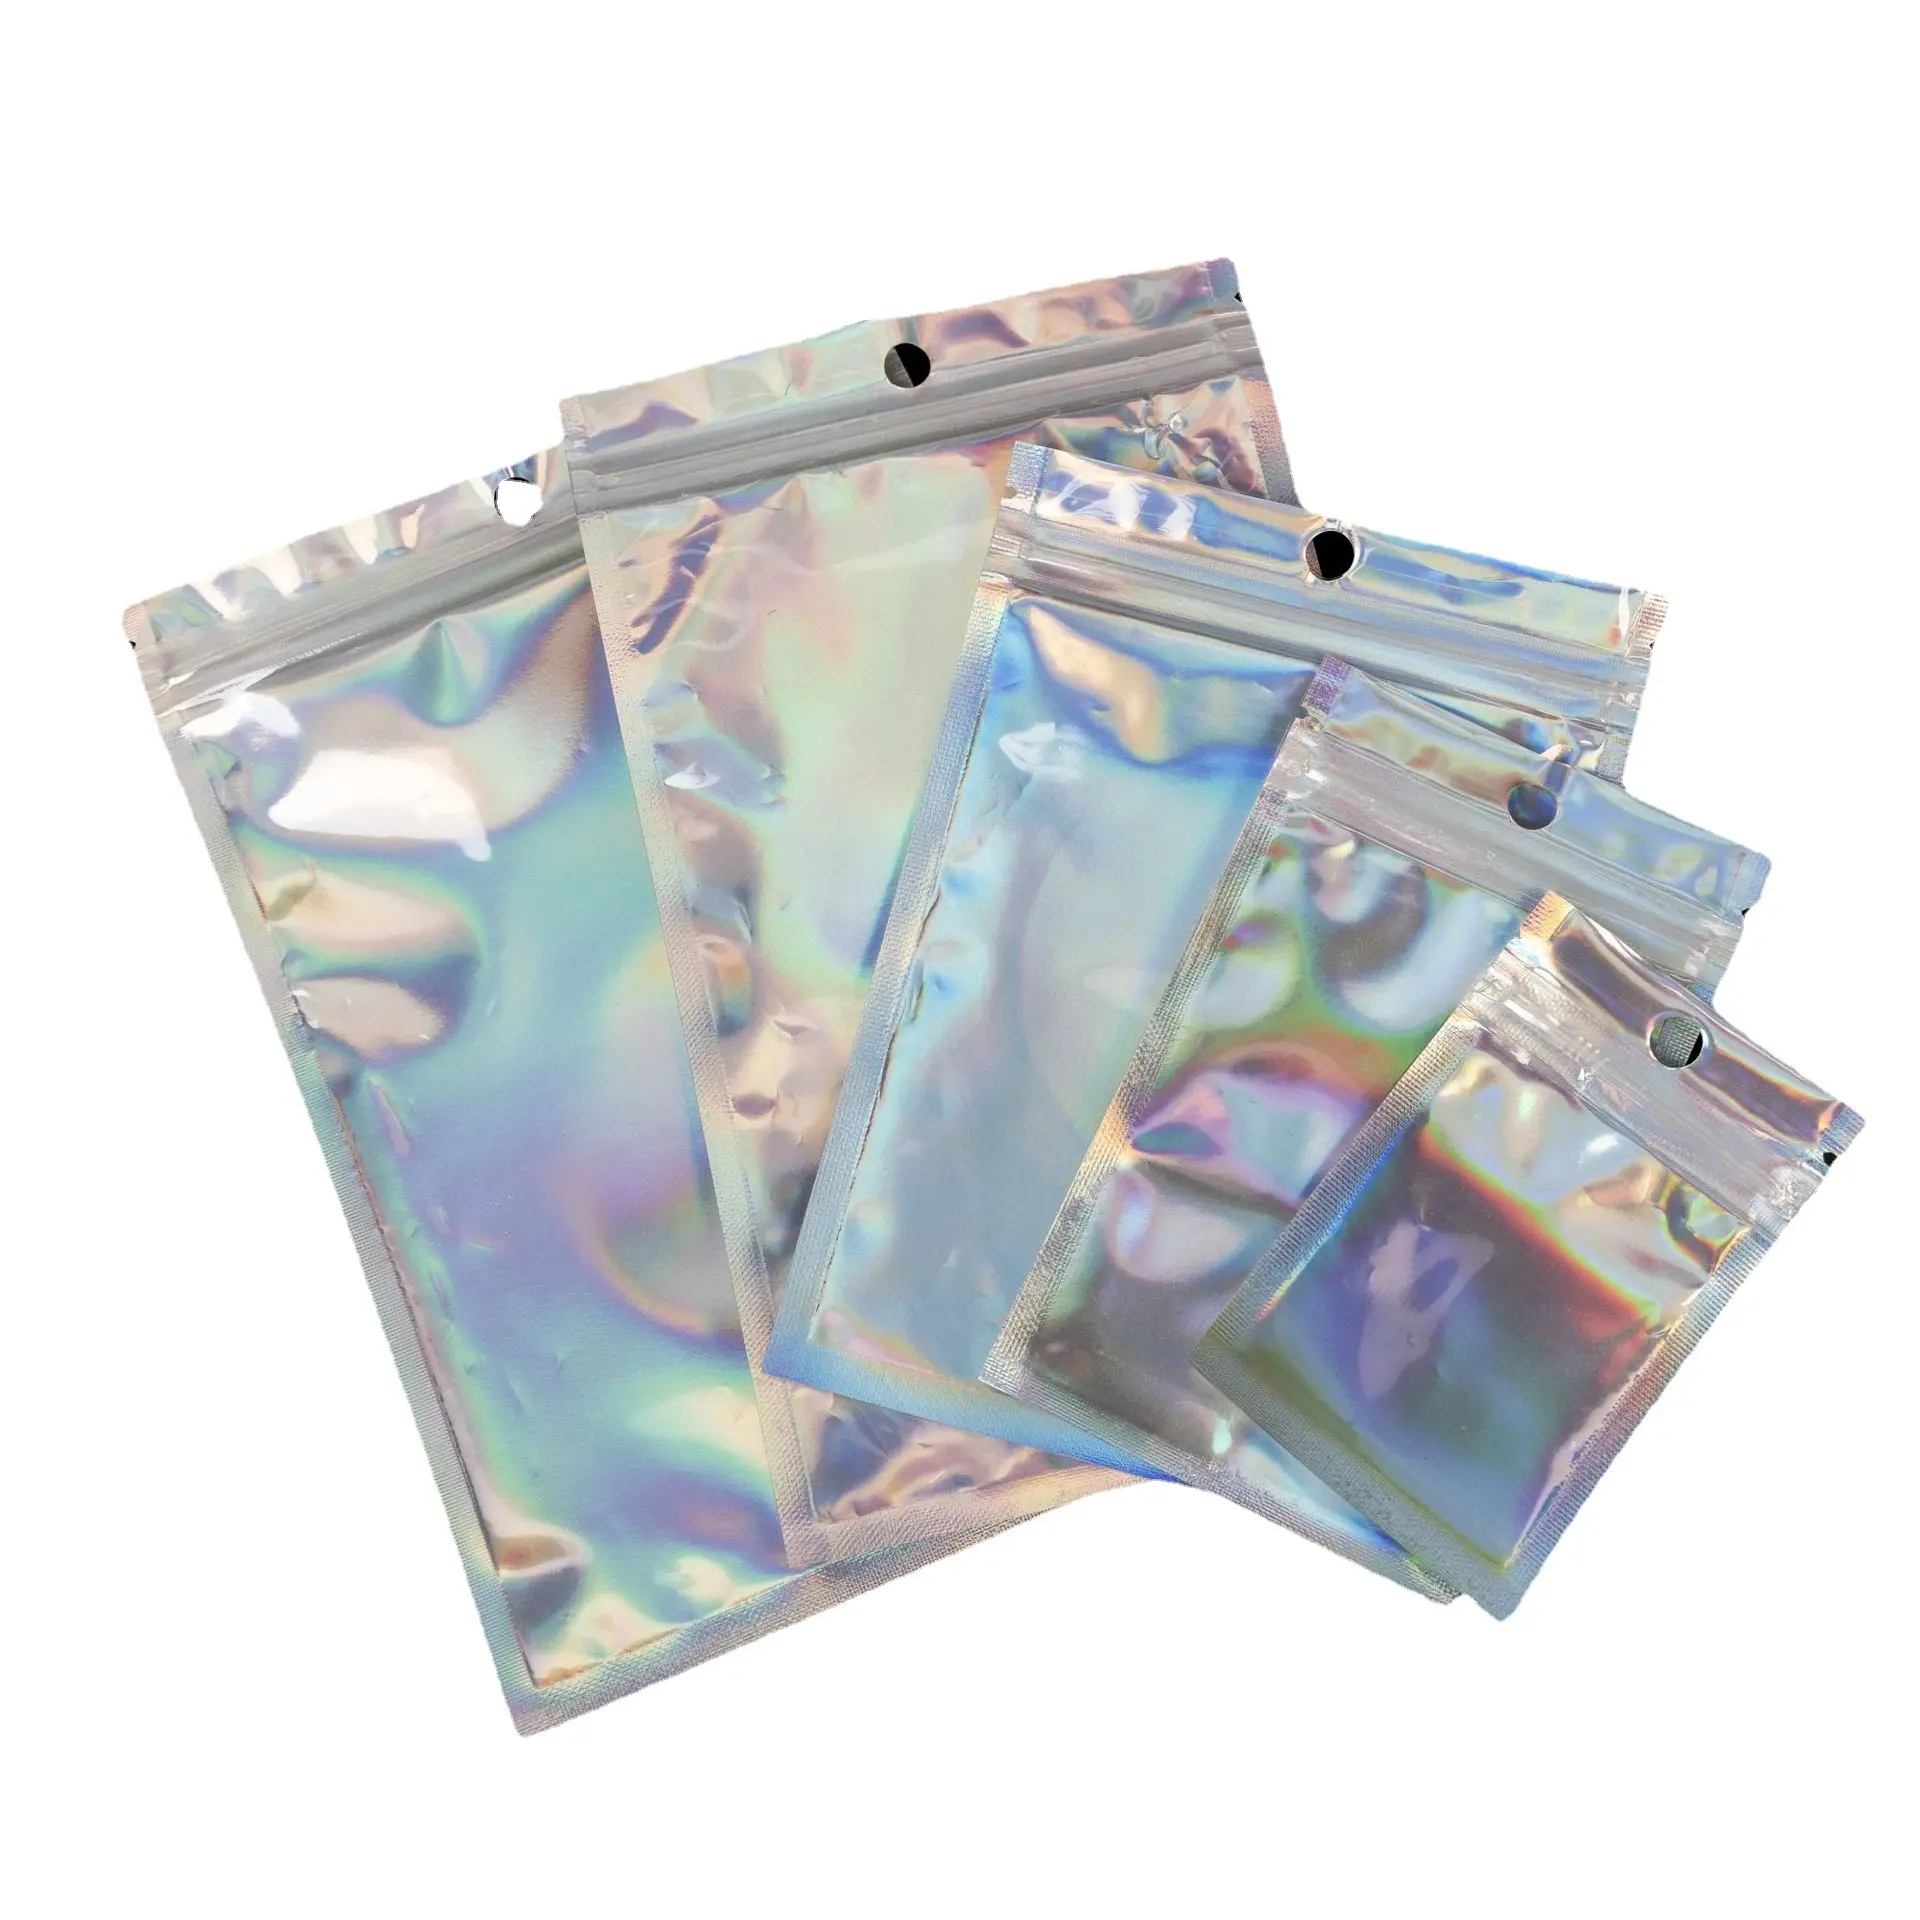 Papel de aluminio ECO holográfico, transparente, resellable, pequeño almacenamiento, sellado térmico, transparente, mylar, plata, láser, embalaje, bolsas con cierre de cremallera